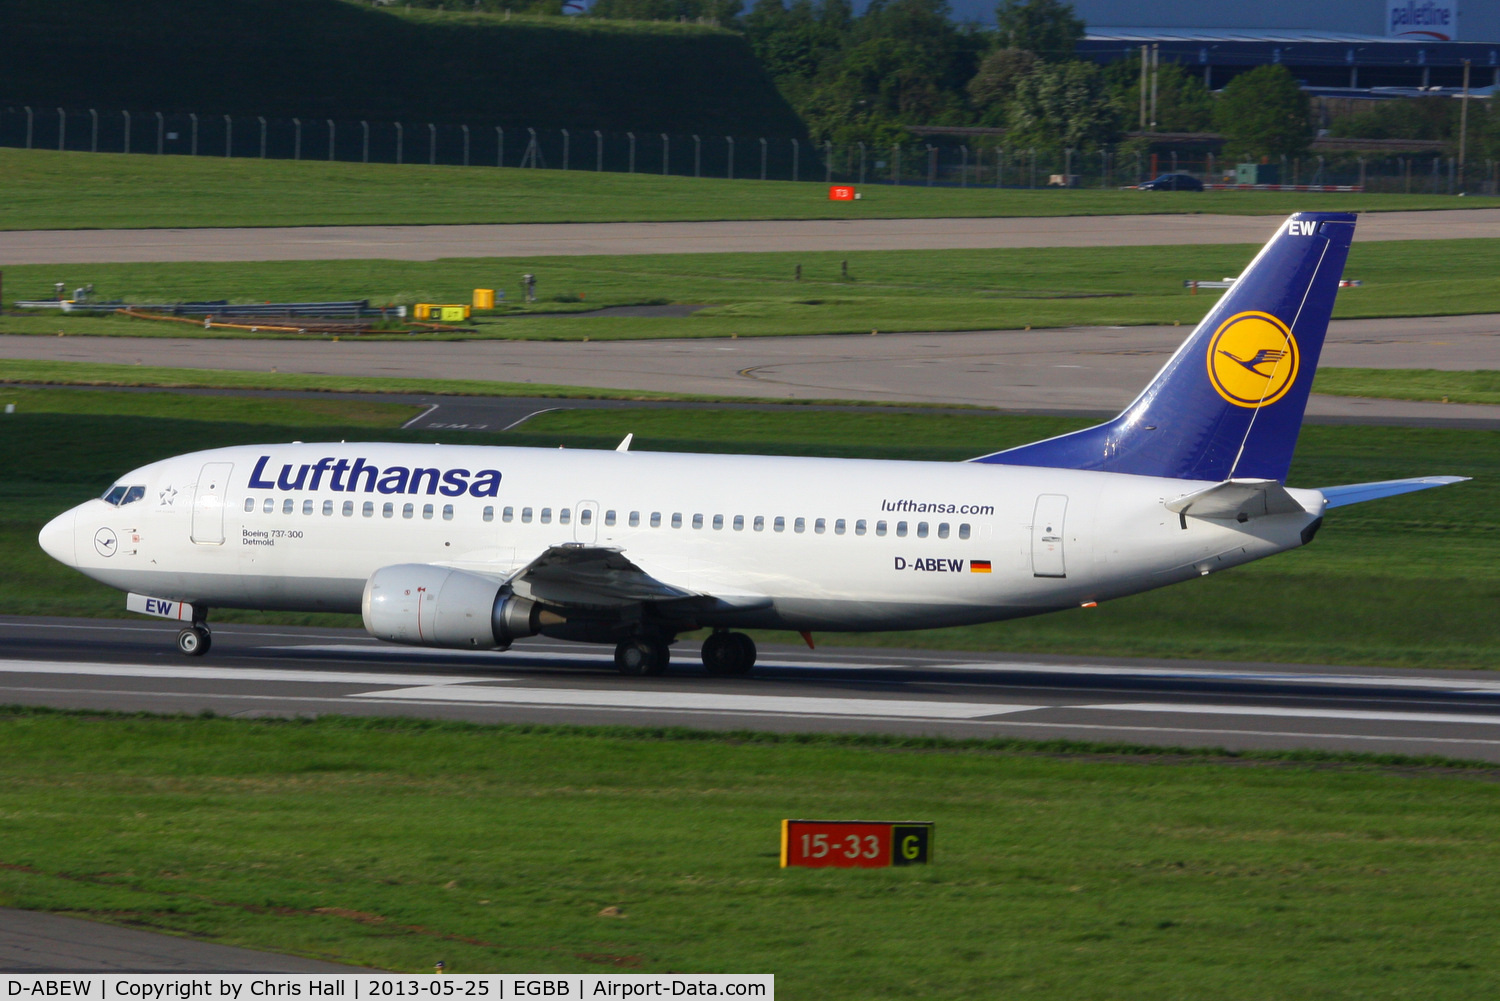 D-ABEW, 1995 Boeing 737-330 C/N 27905, Lufthansa